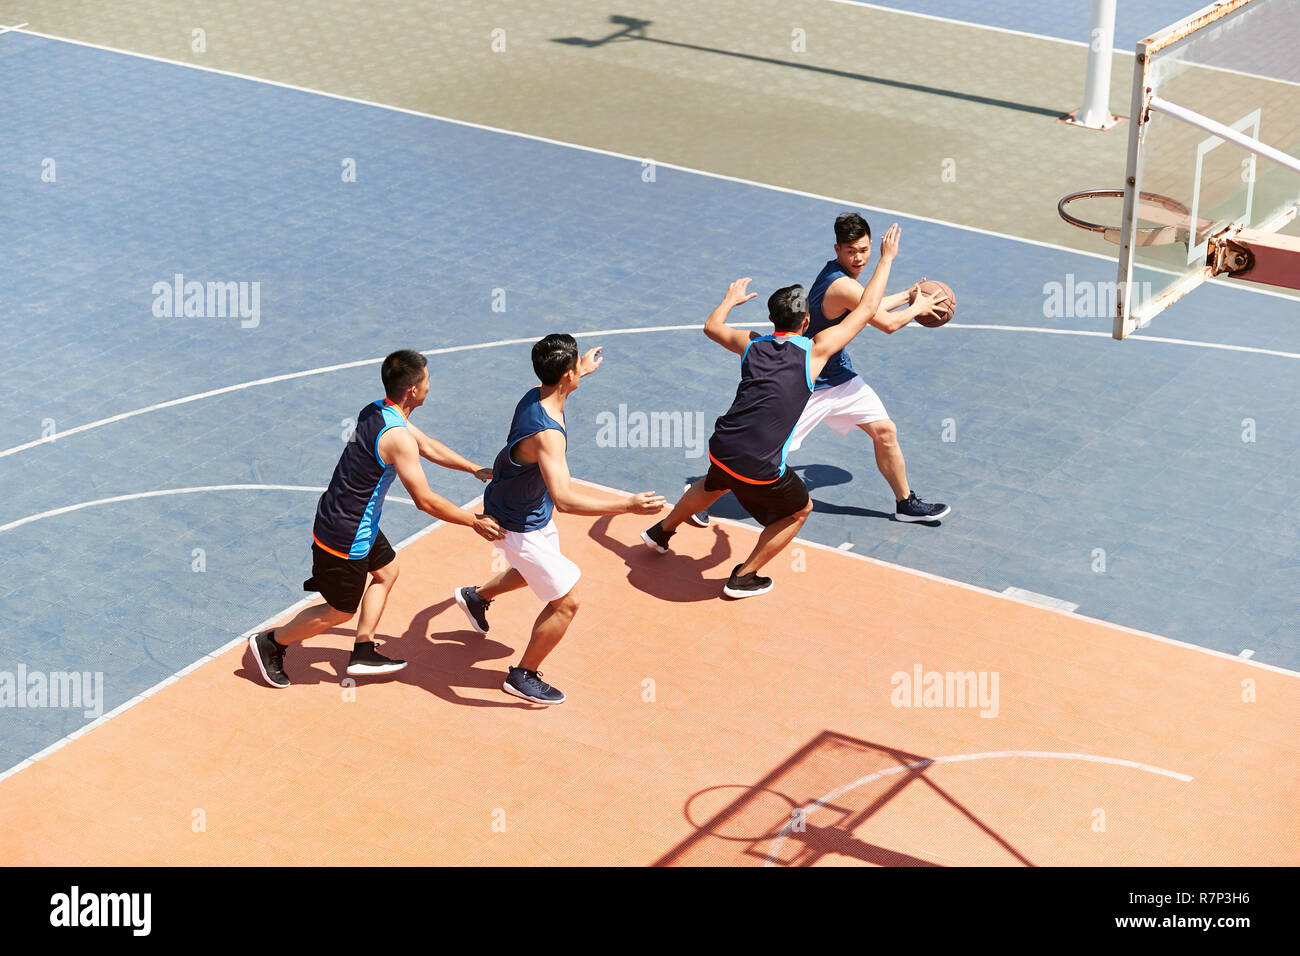 Les jeunes joueurs de basket-ball masculin asiatique jouant un jeu sur une cour. Banque D'Images